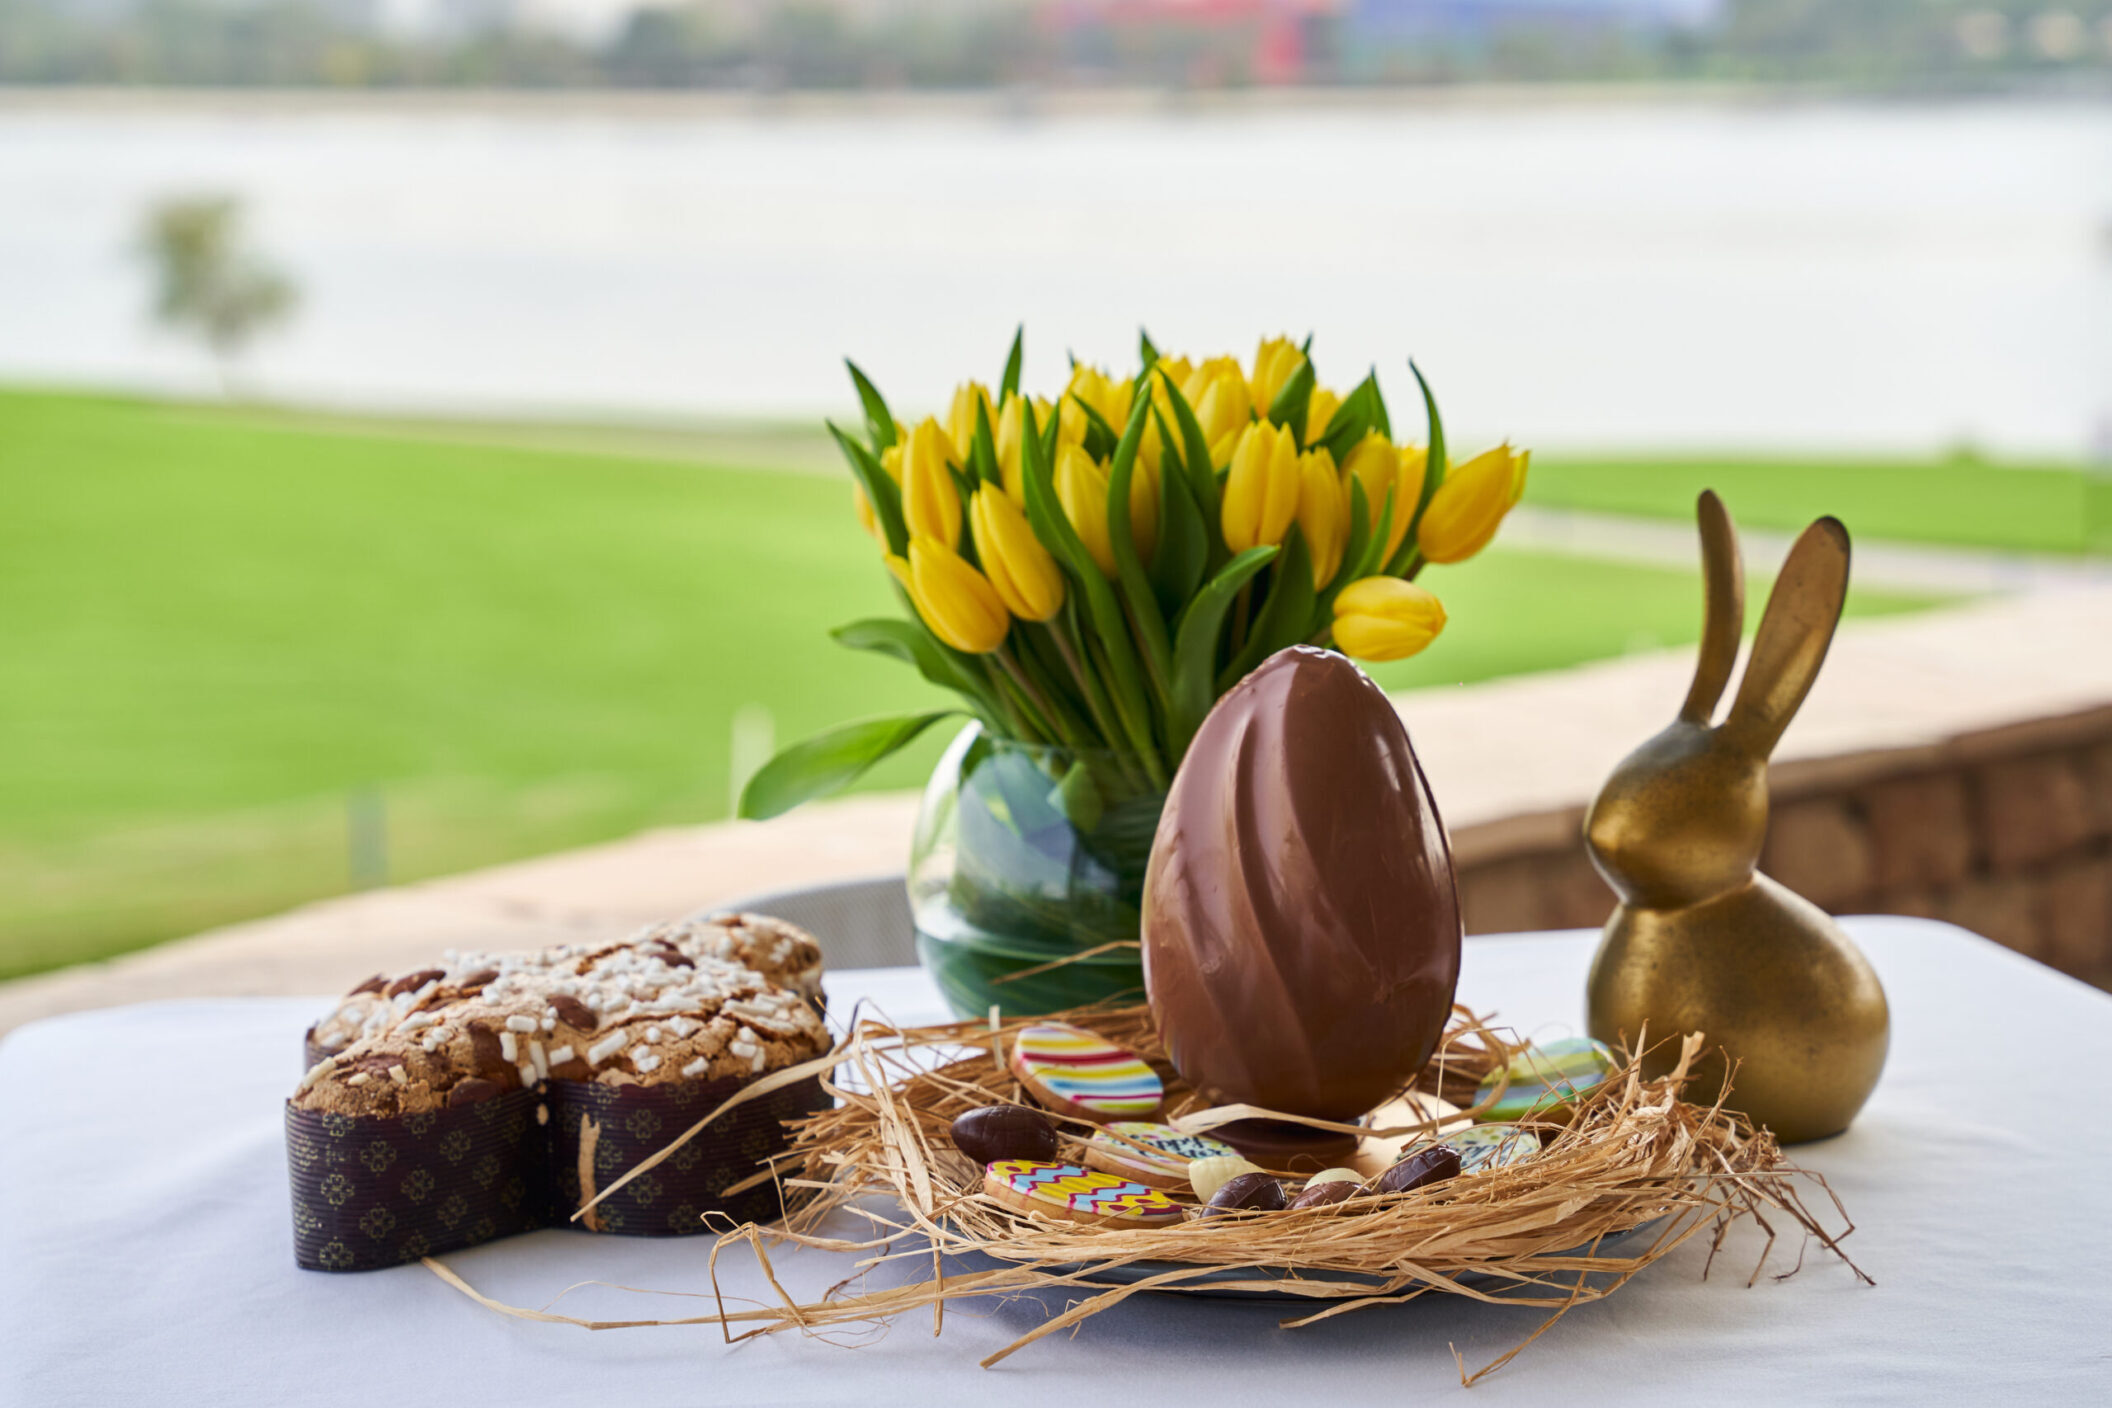 Celebrate Easter at Dubai Creek Resort Dubai Creek Resort